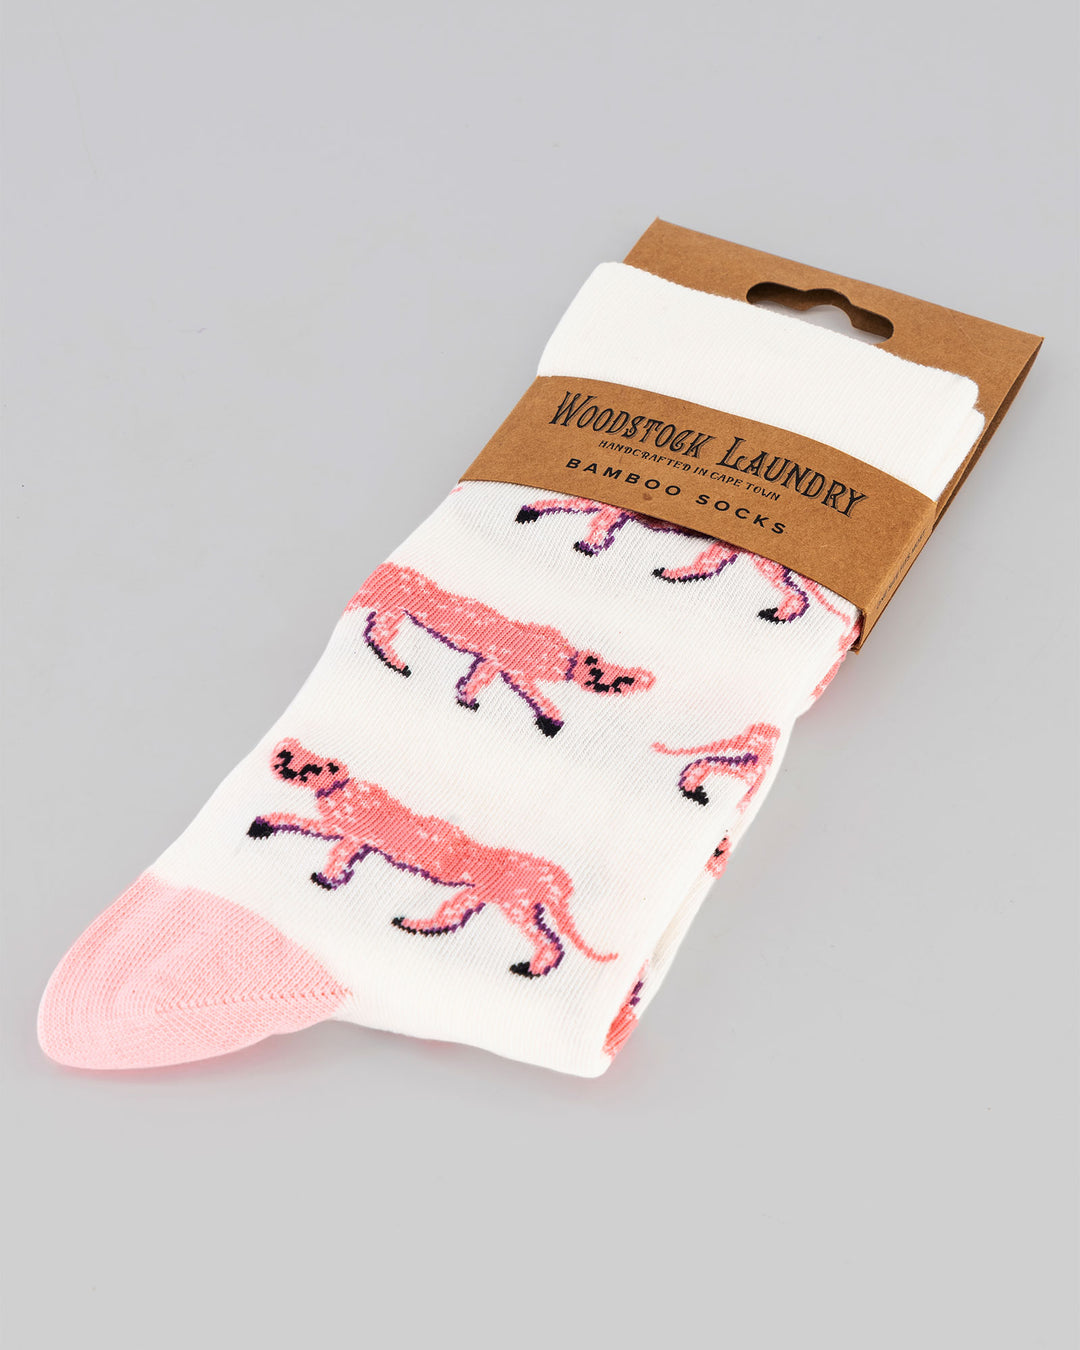 Socks Pink Cheetahs Packaging - Woodstock Laundry